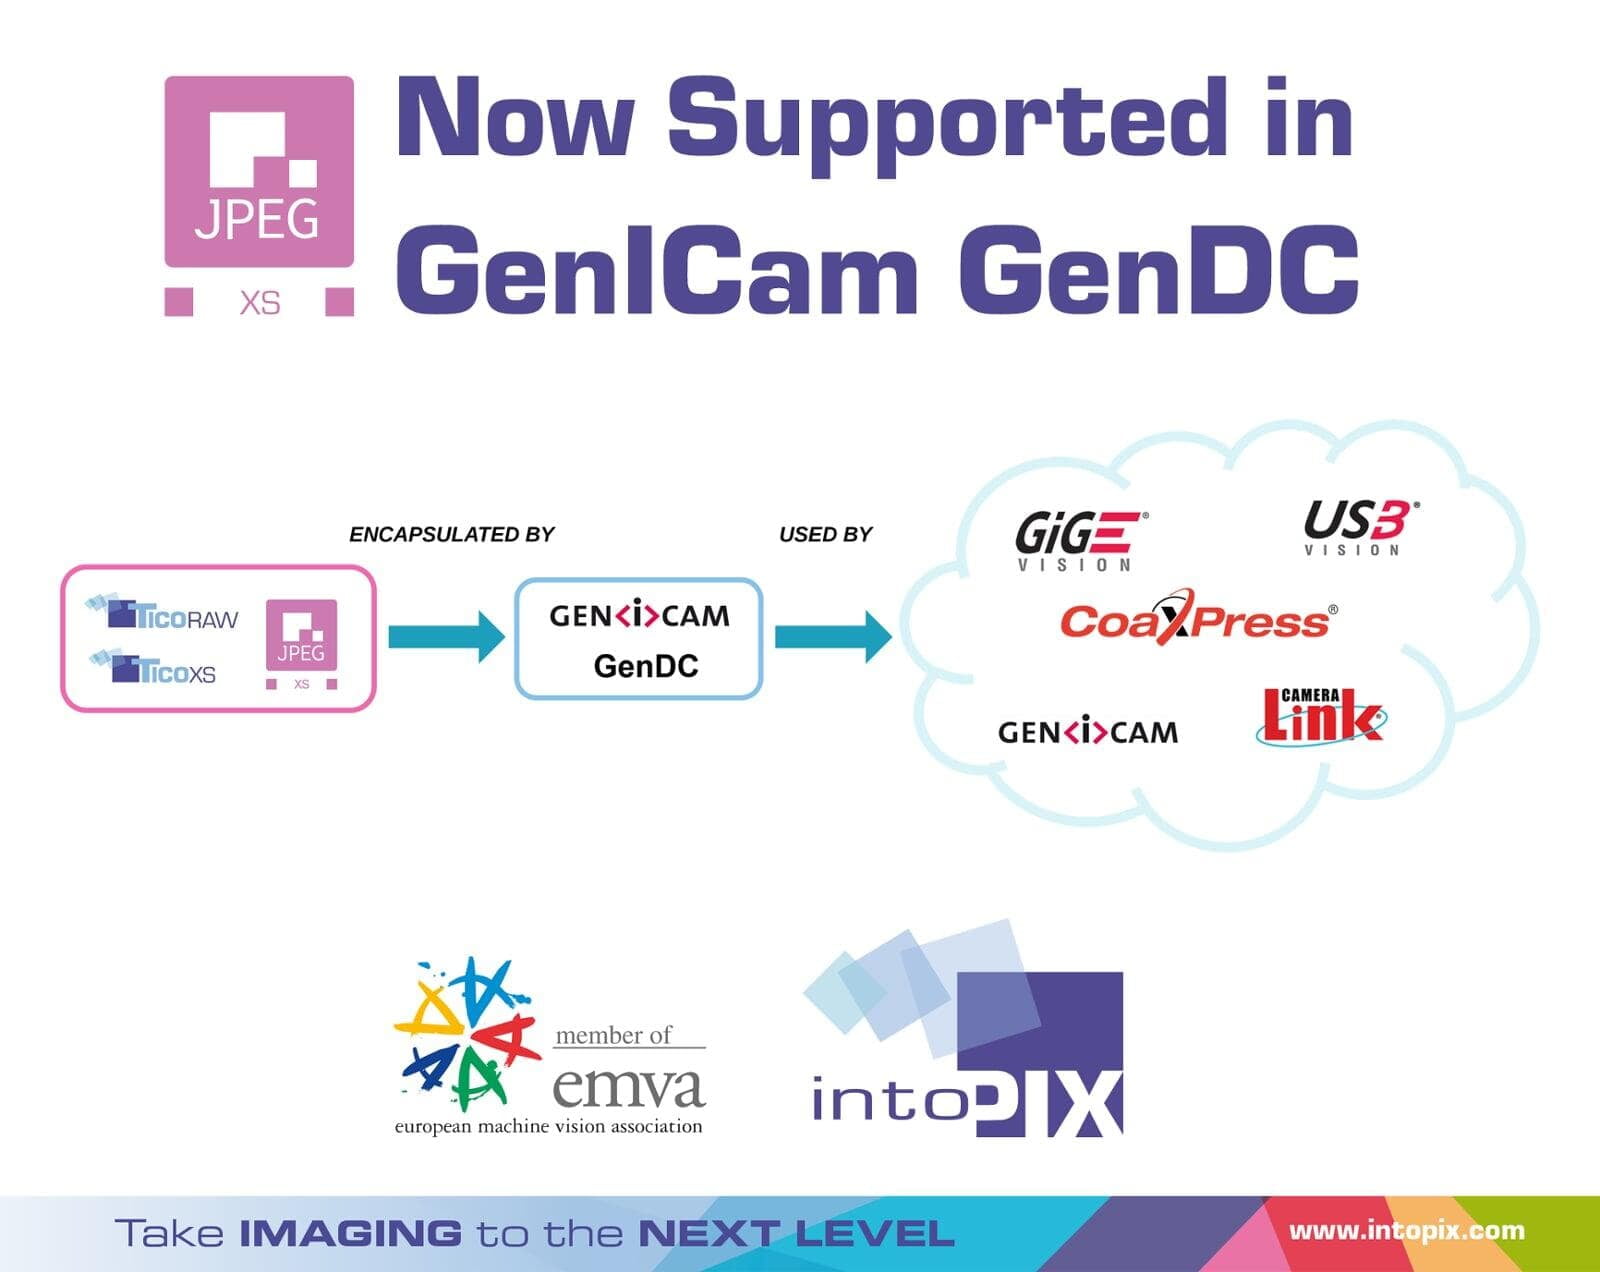 JPEG XSが、EMVAが管理するマシンビジョン規格GenICamに参加